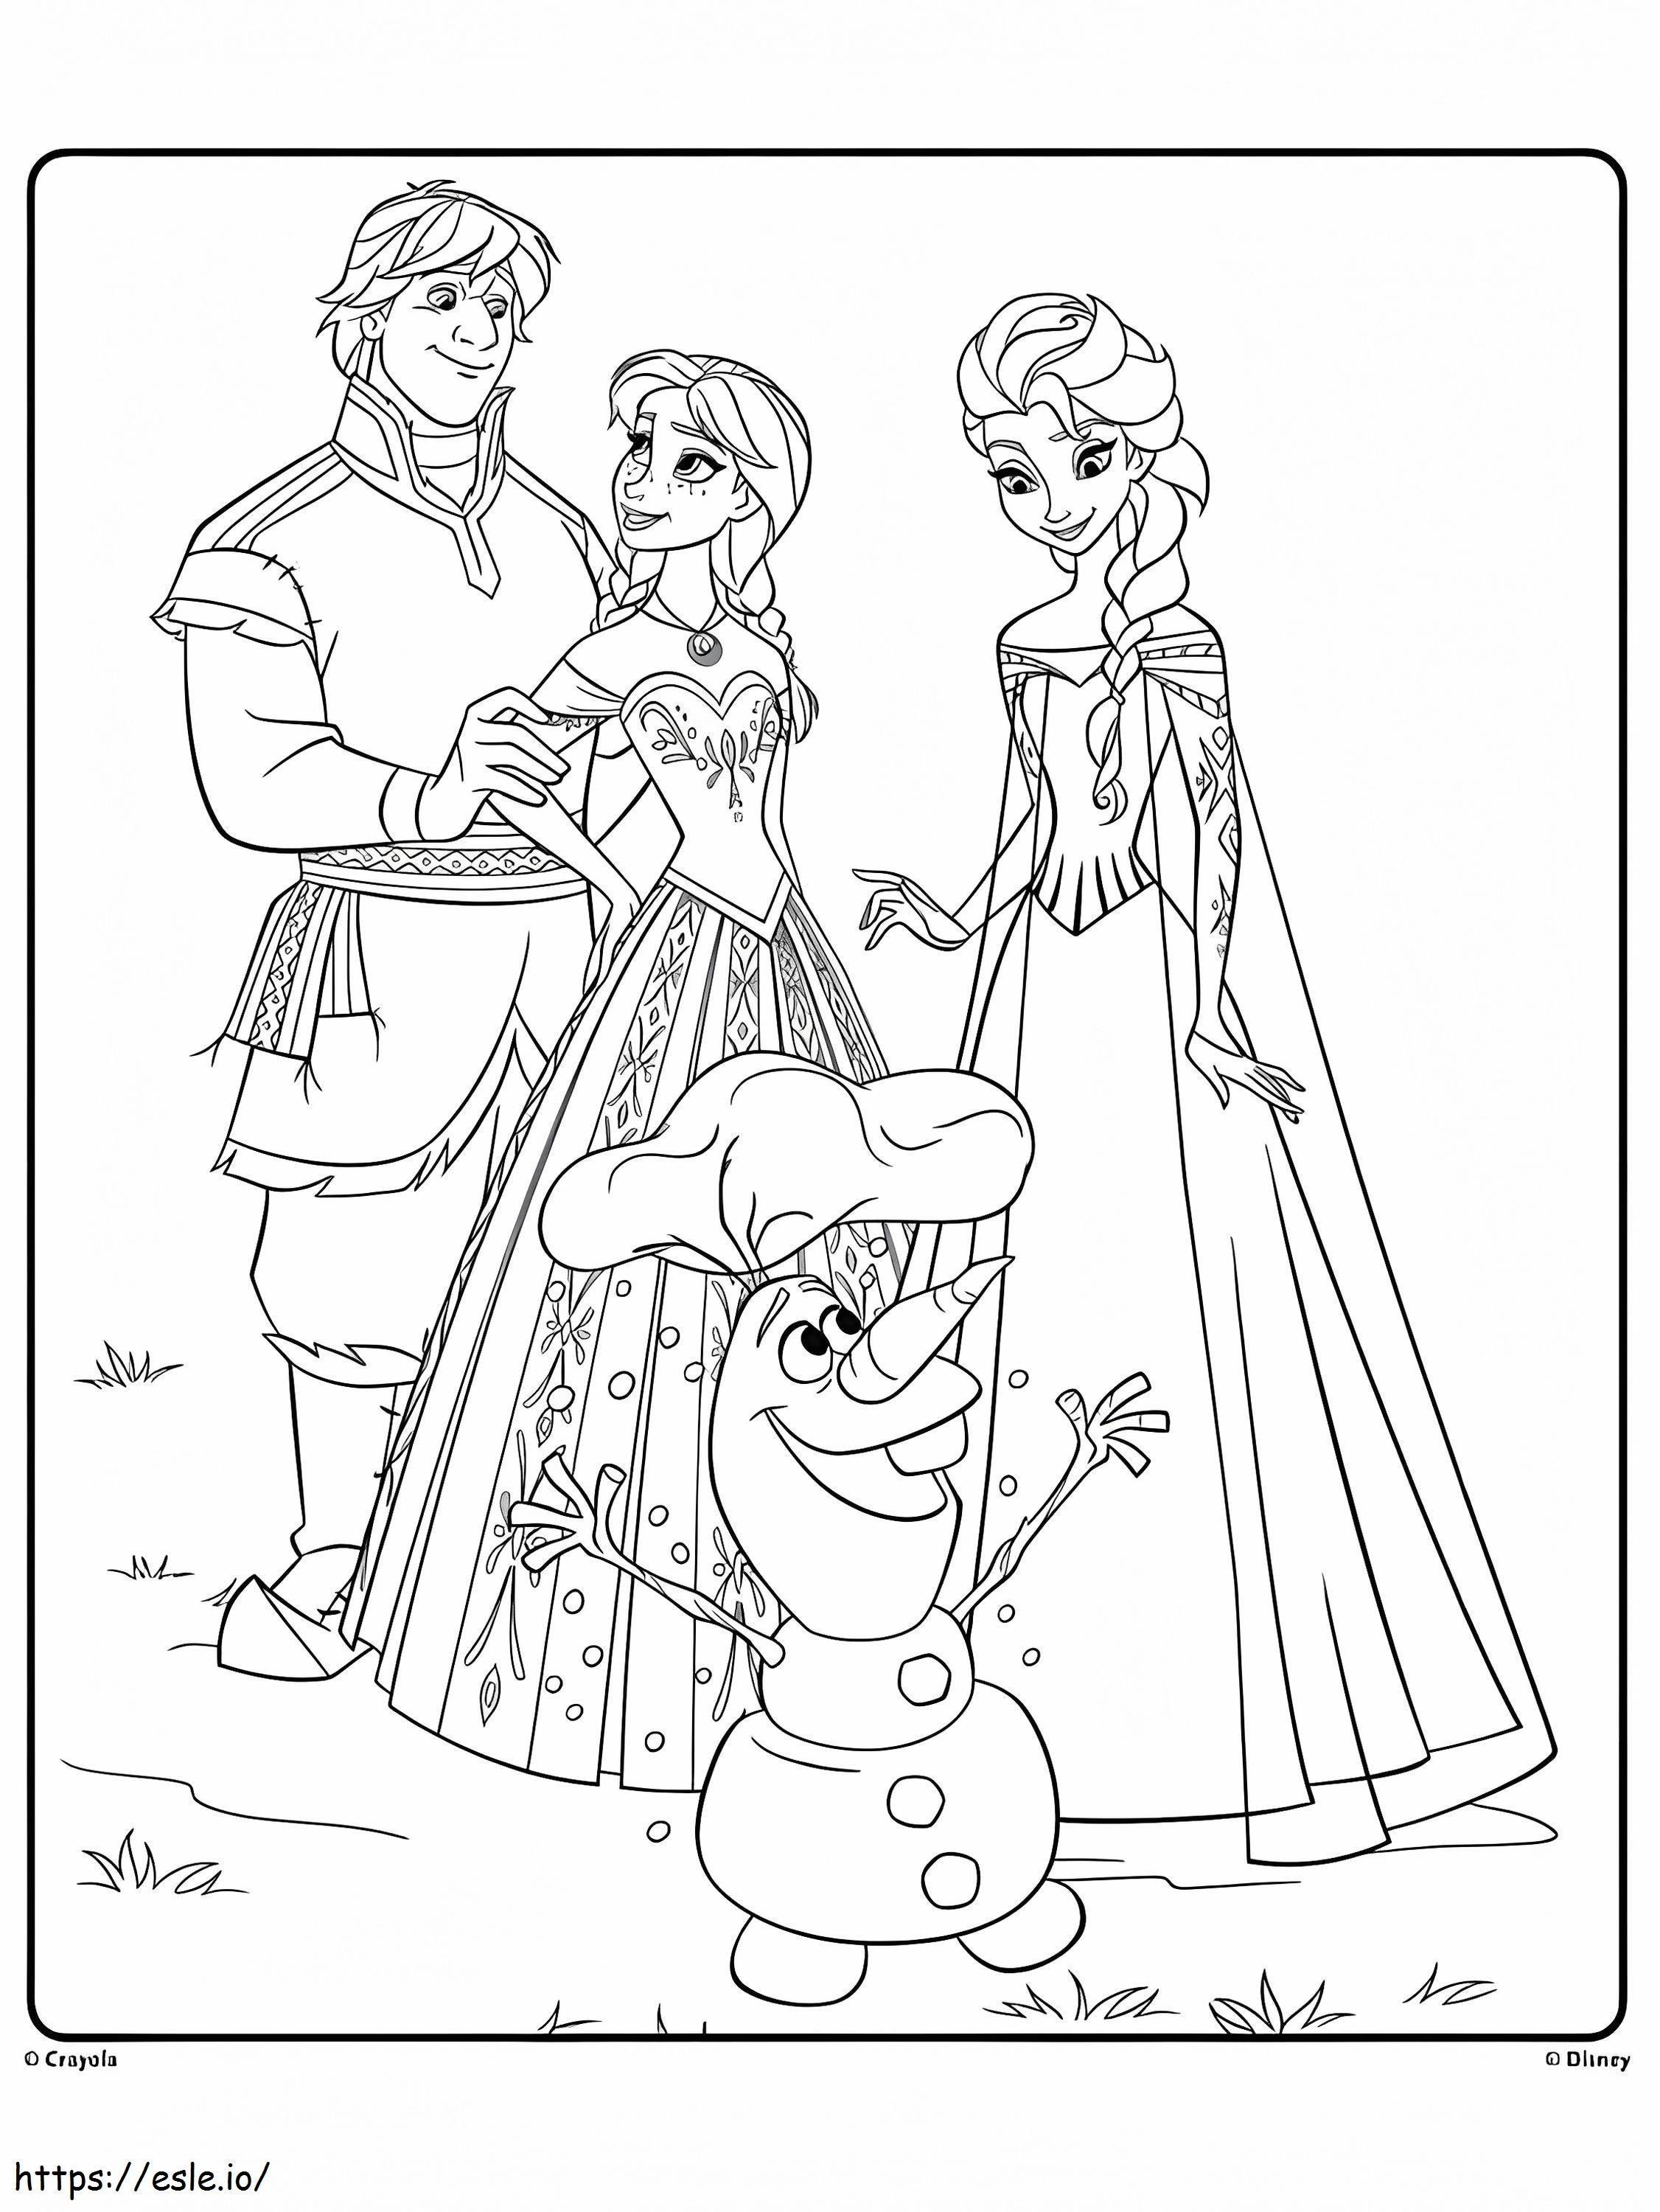 Olaf și prietenii de colorat